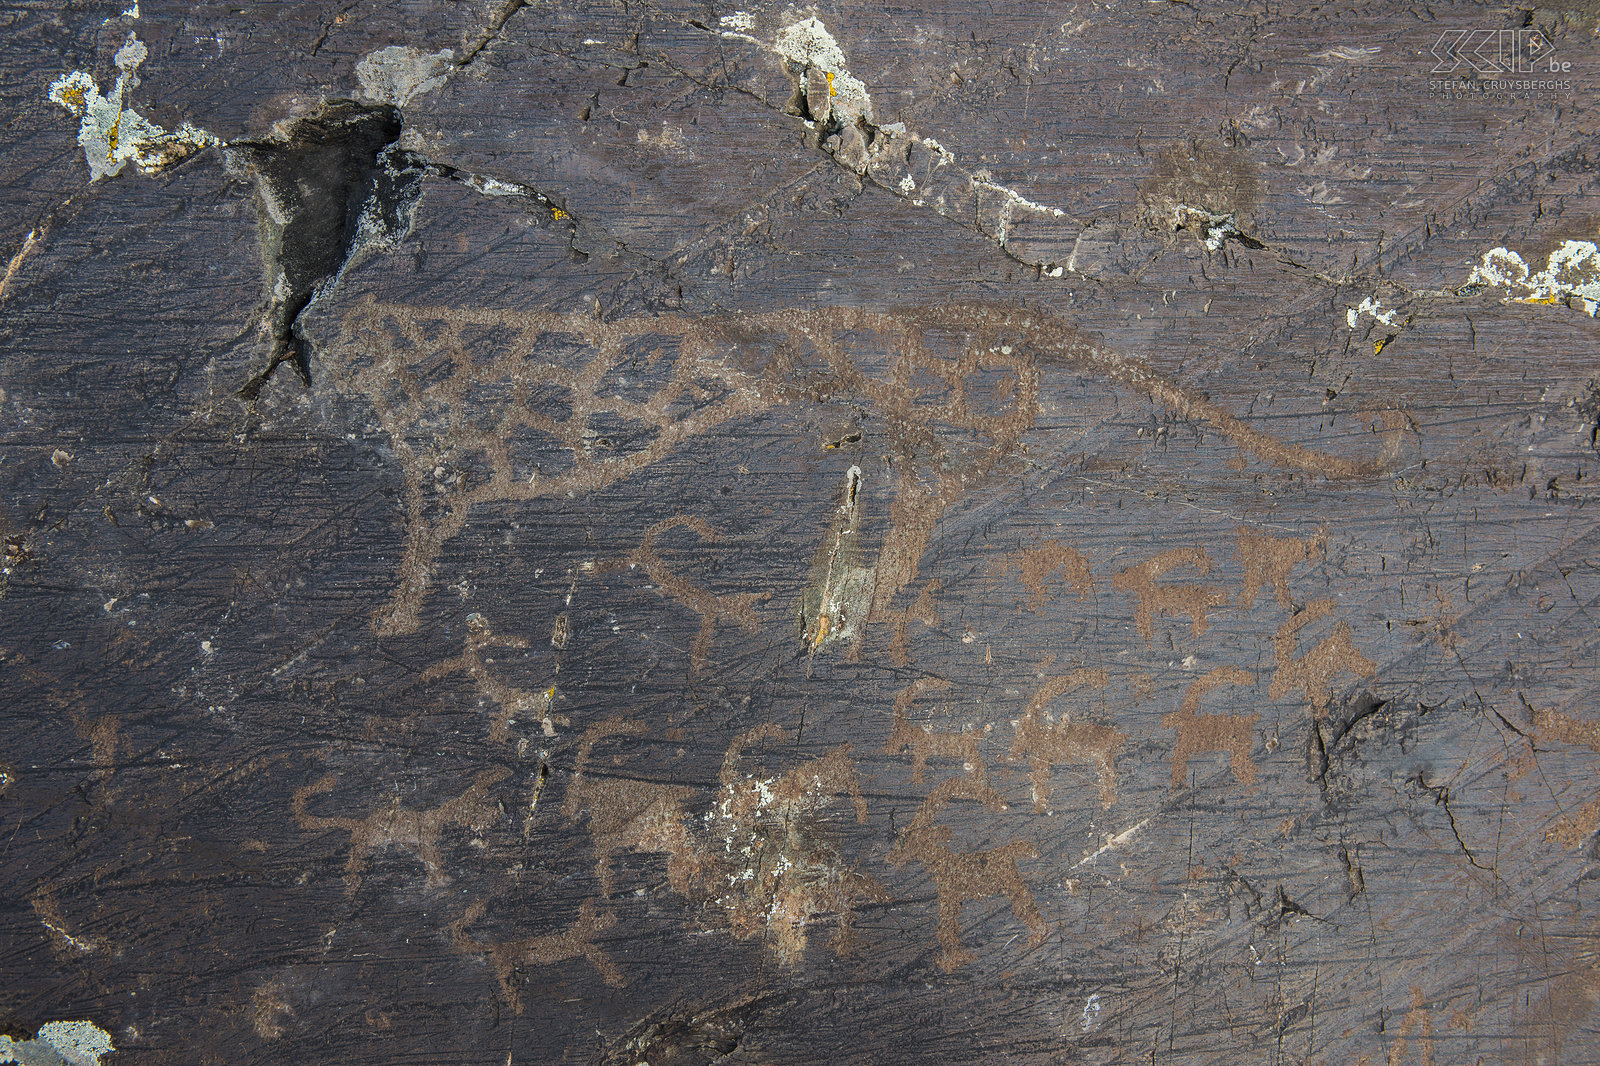 Altai Tavan Bogd - Prehistorische rotstekening Rotstekening van een sneeuw luipaard. Stefan Cruysberghs